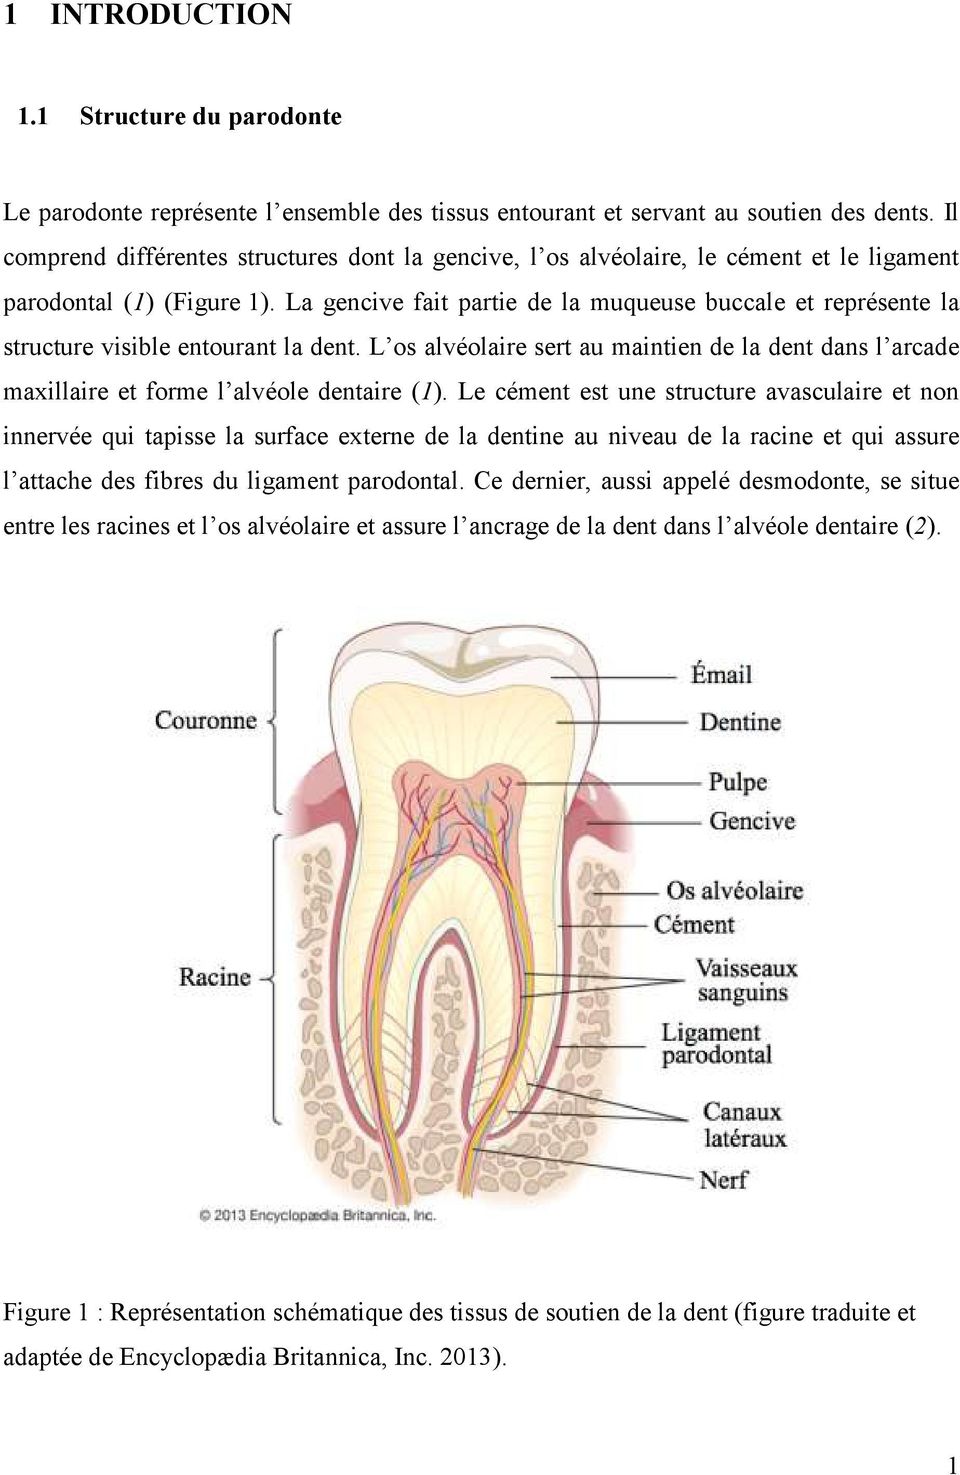 La gencive fait partie de la muqueuse buccale et représente la structure visible entourant la dent.